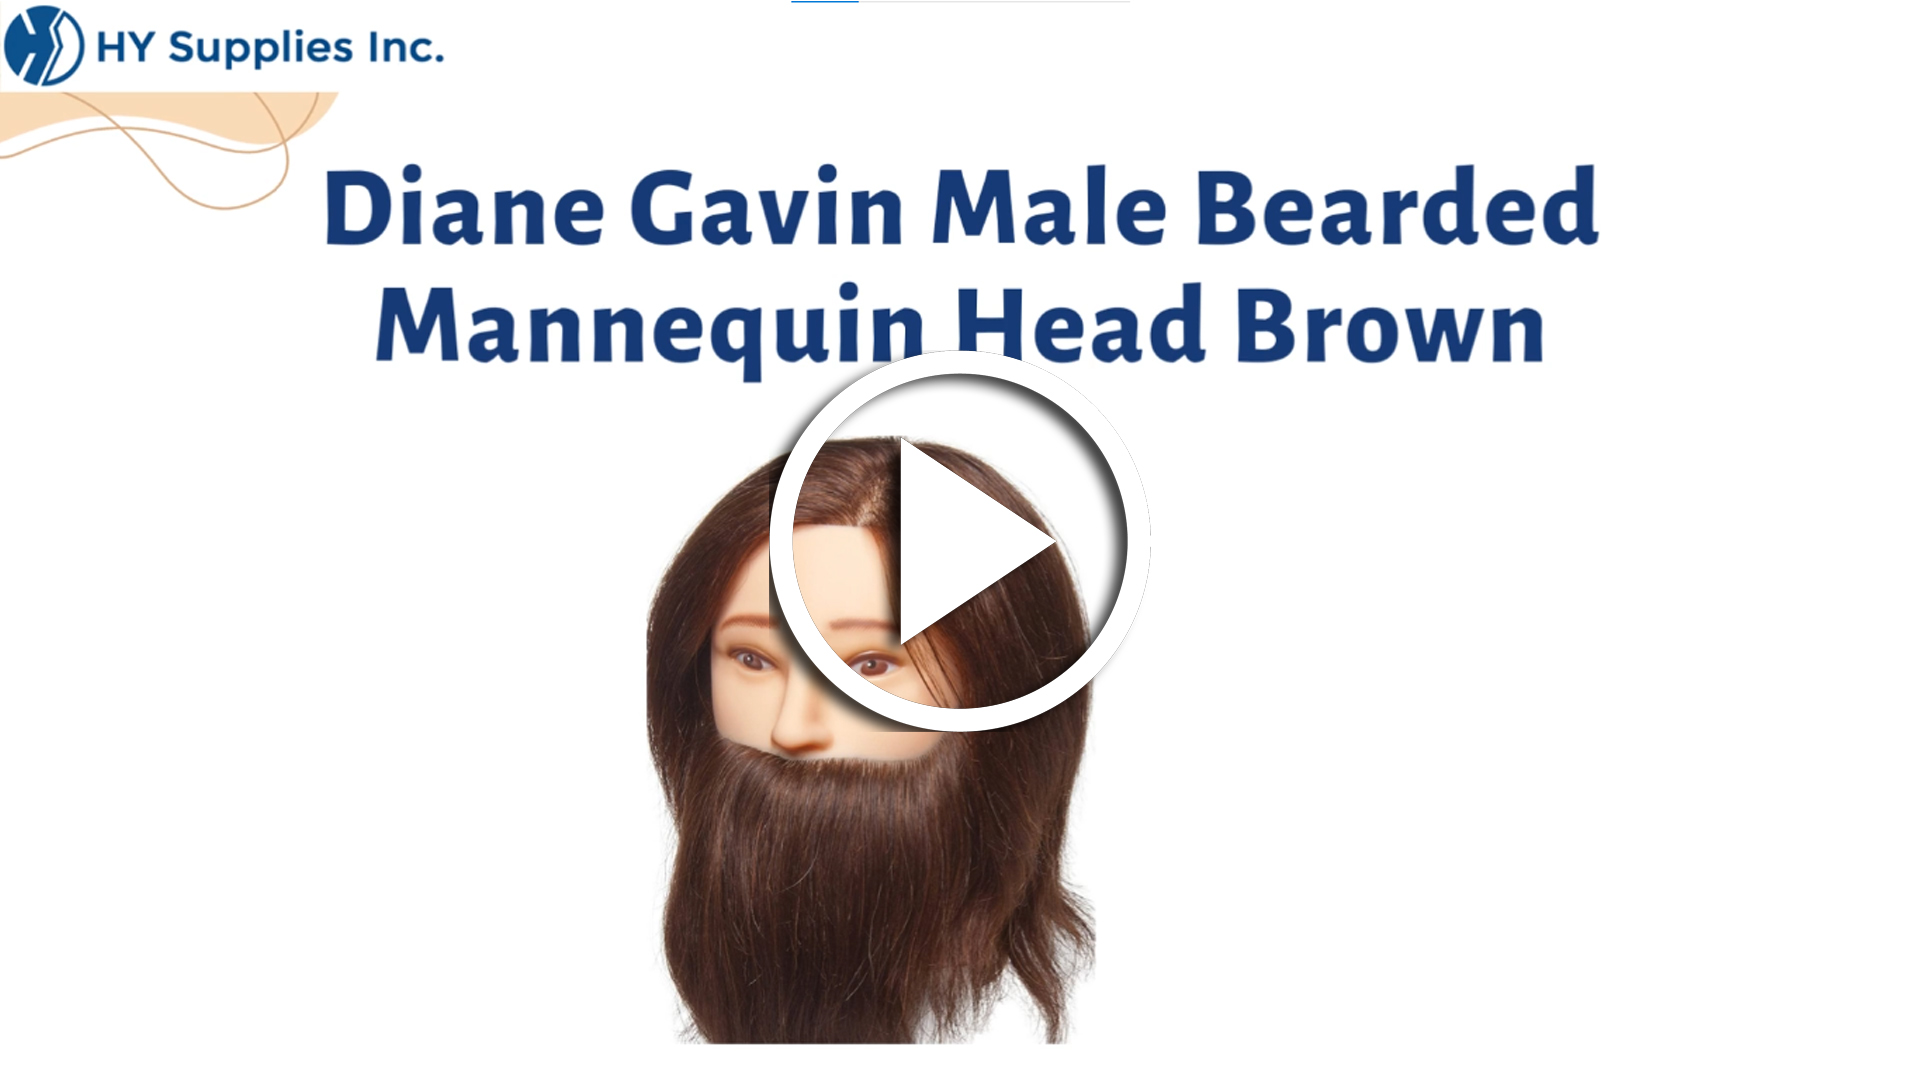 Diane Gavin Male Bearded Mannequin Head Brown